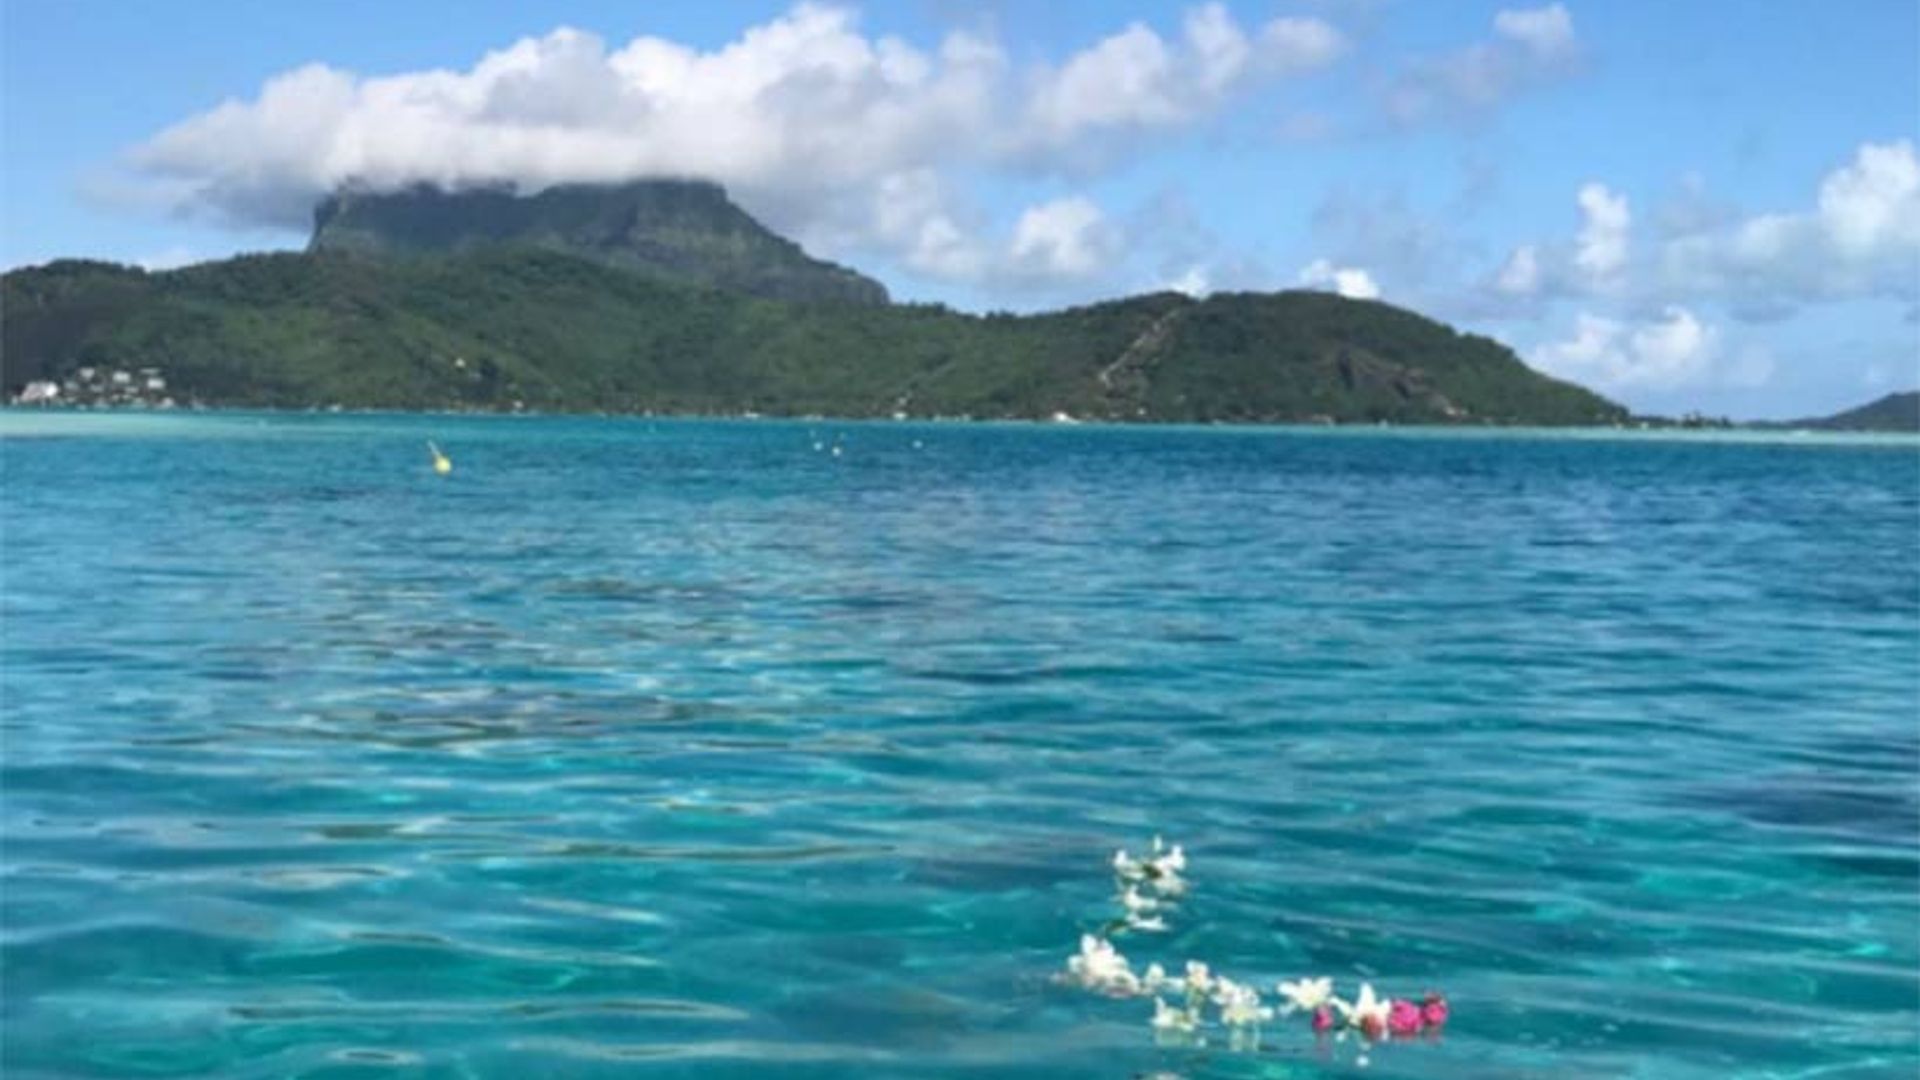 Bradley Cooper and Irina Shayk take star-studded holiday in Tahiti